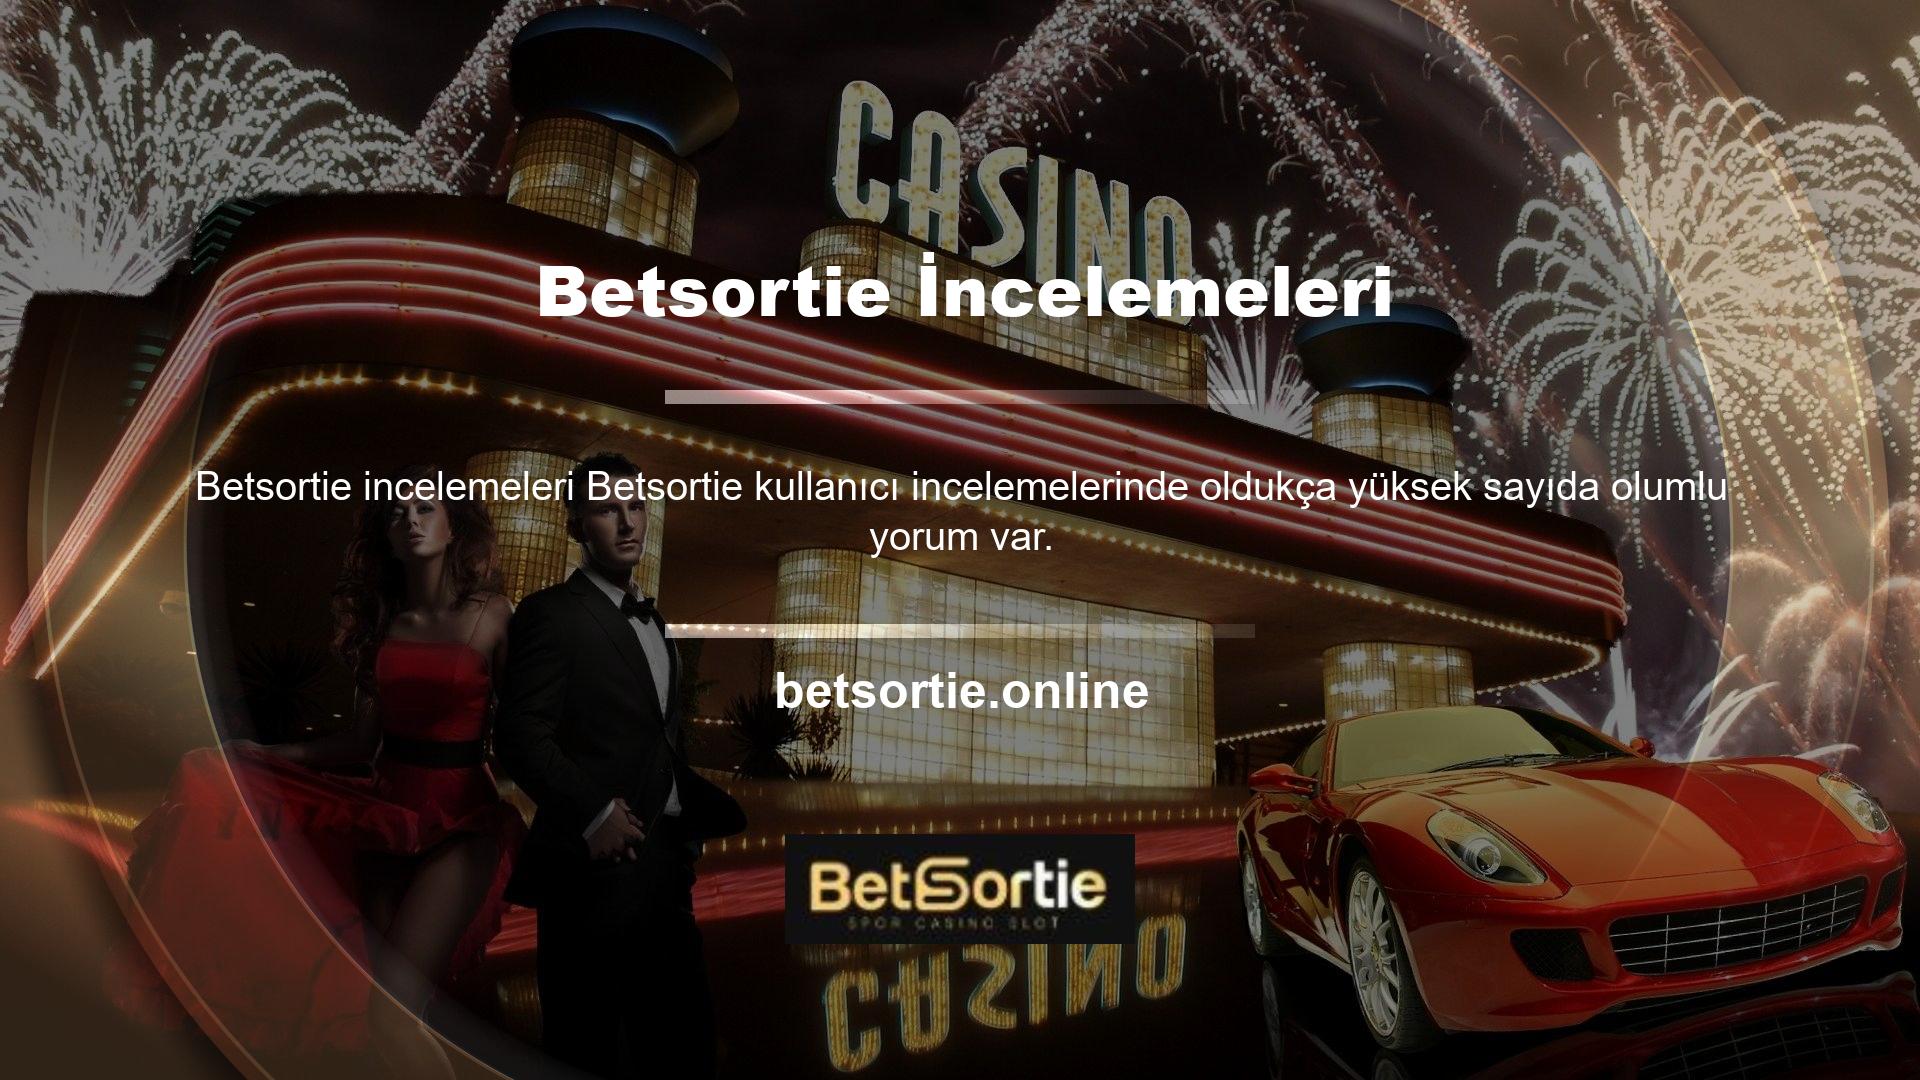 Betsortie üyelik, para yatırma, canlı destek gibi birçok hizmeti sunan ünlü sitelerden biridir